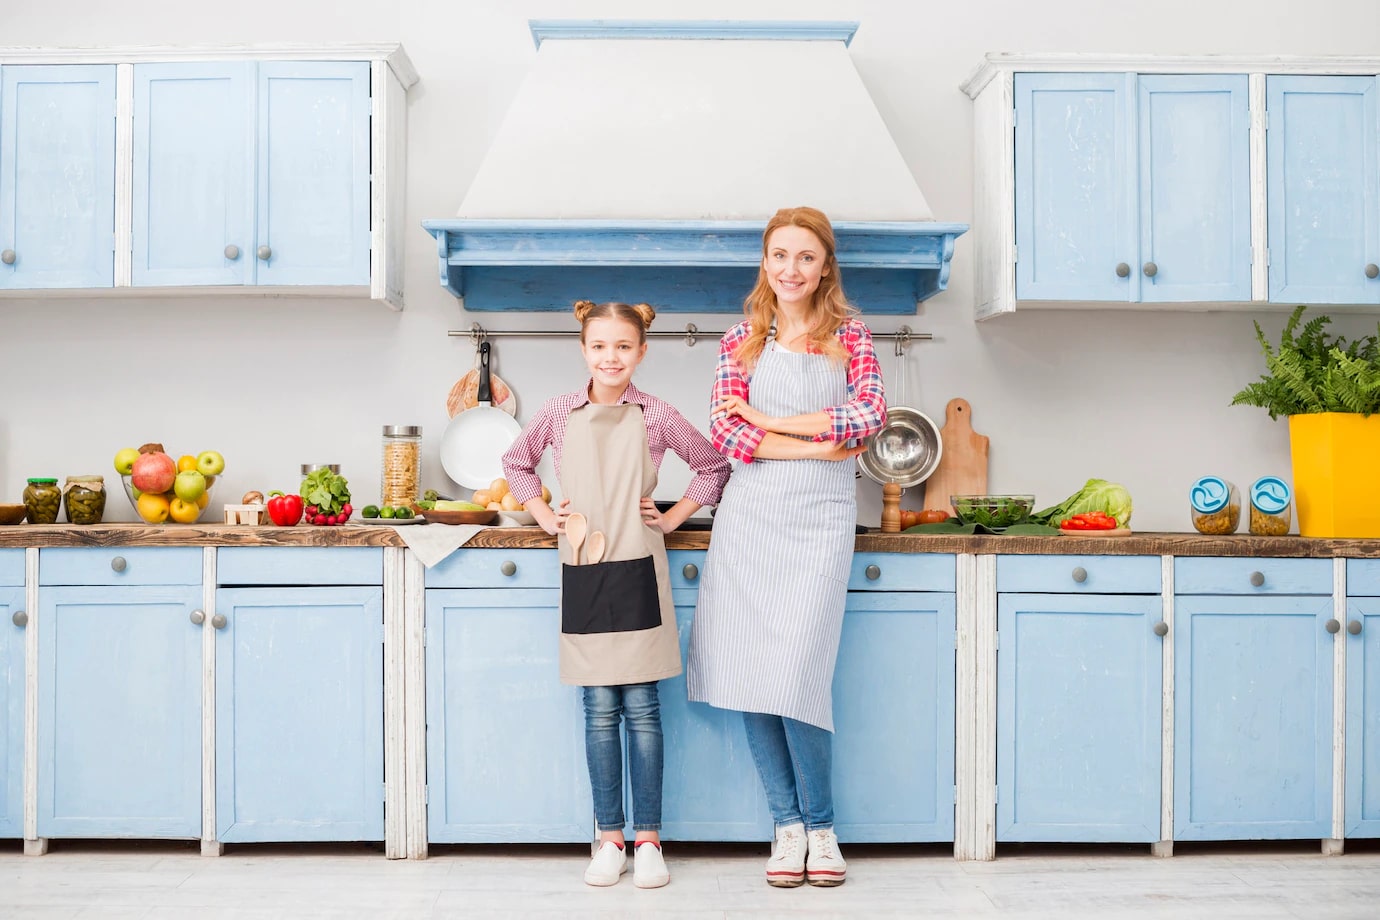 Сообщение на кухне мама. Мама на кухне. Фотосессия мама и дочка на кухне. Дочка на кухне. Семья на кухне.